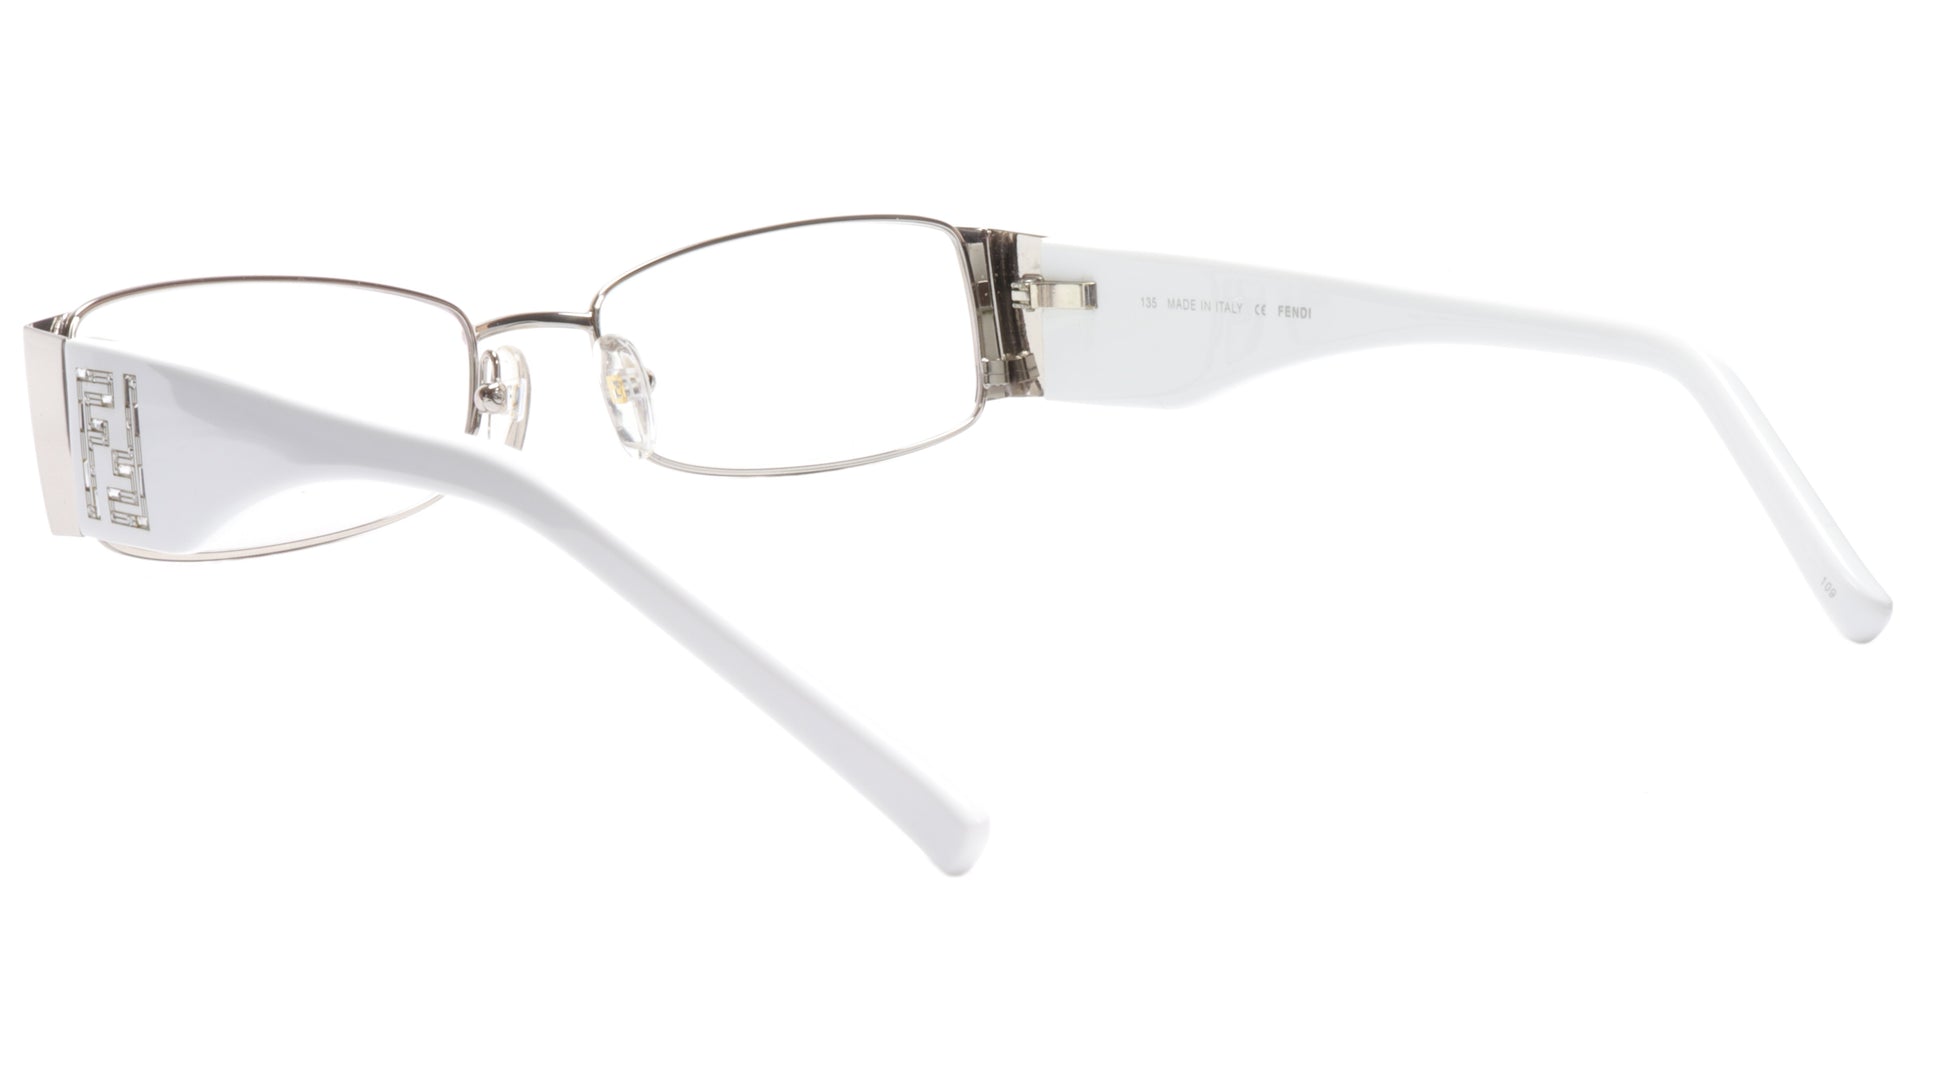 FENDI Eyeglasses Frame F923R (028) Metal Chrome White Italy Made 52-16-135, 28 - Frame Bay